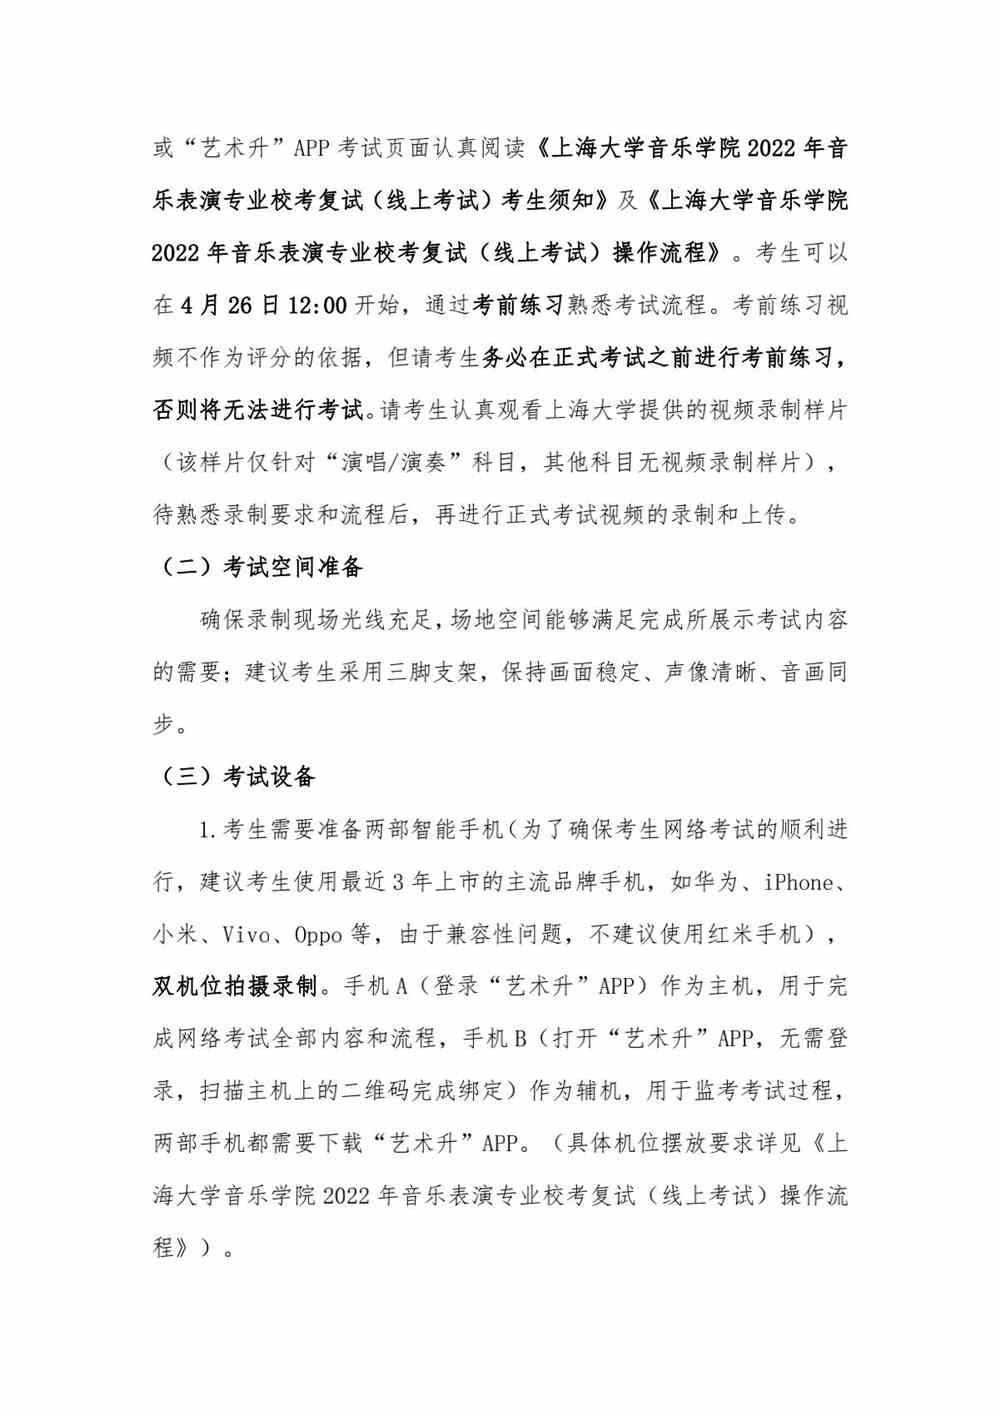 关于上海大学音乐学院2022年音乐表演专业校考复试（线上考试）工作安排的公告